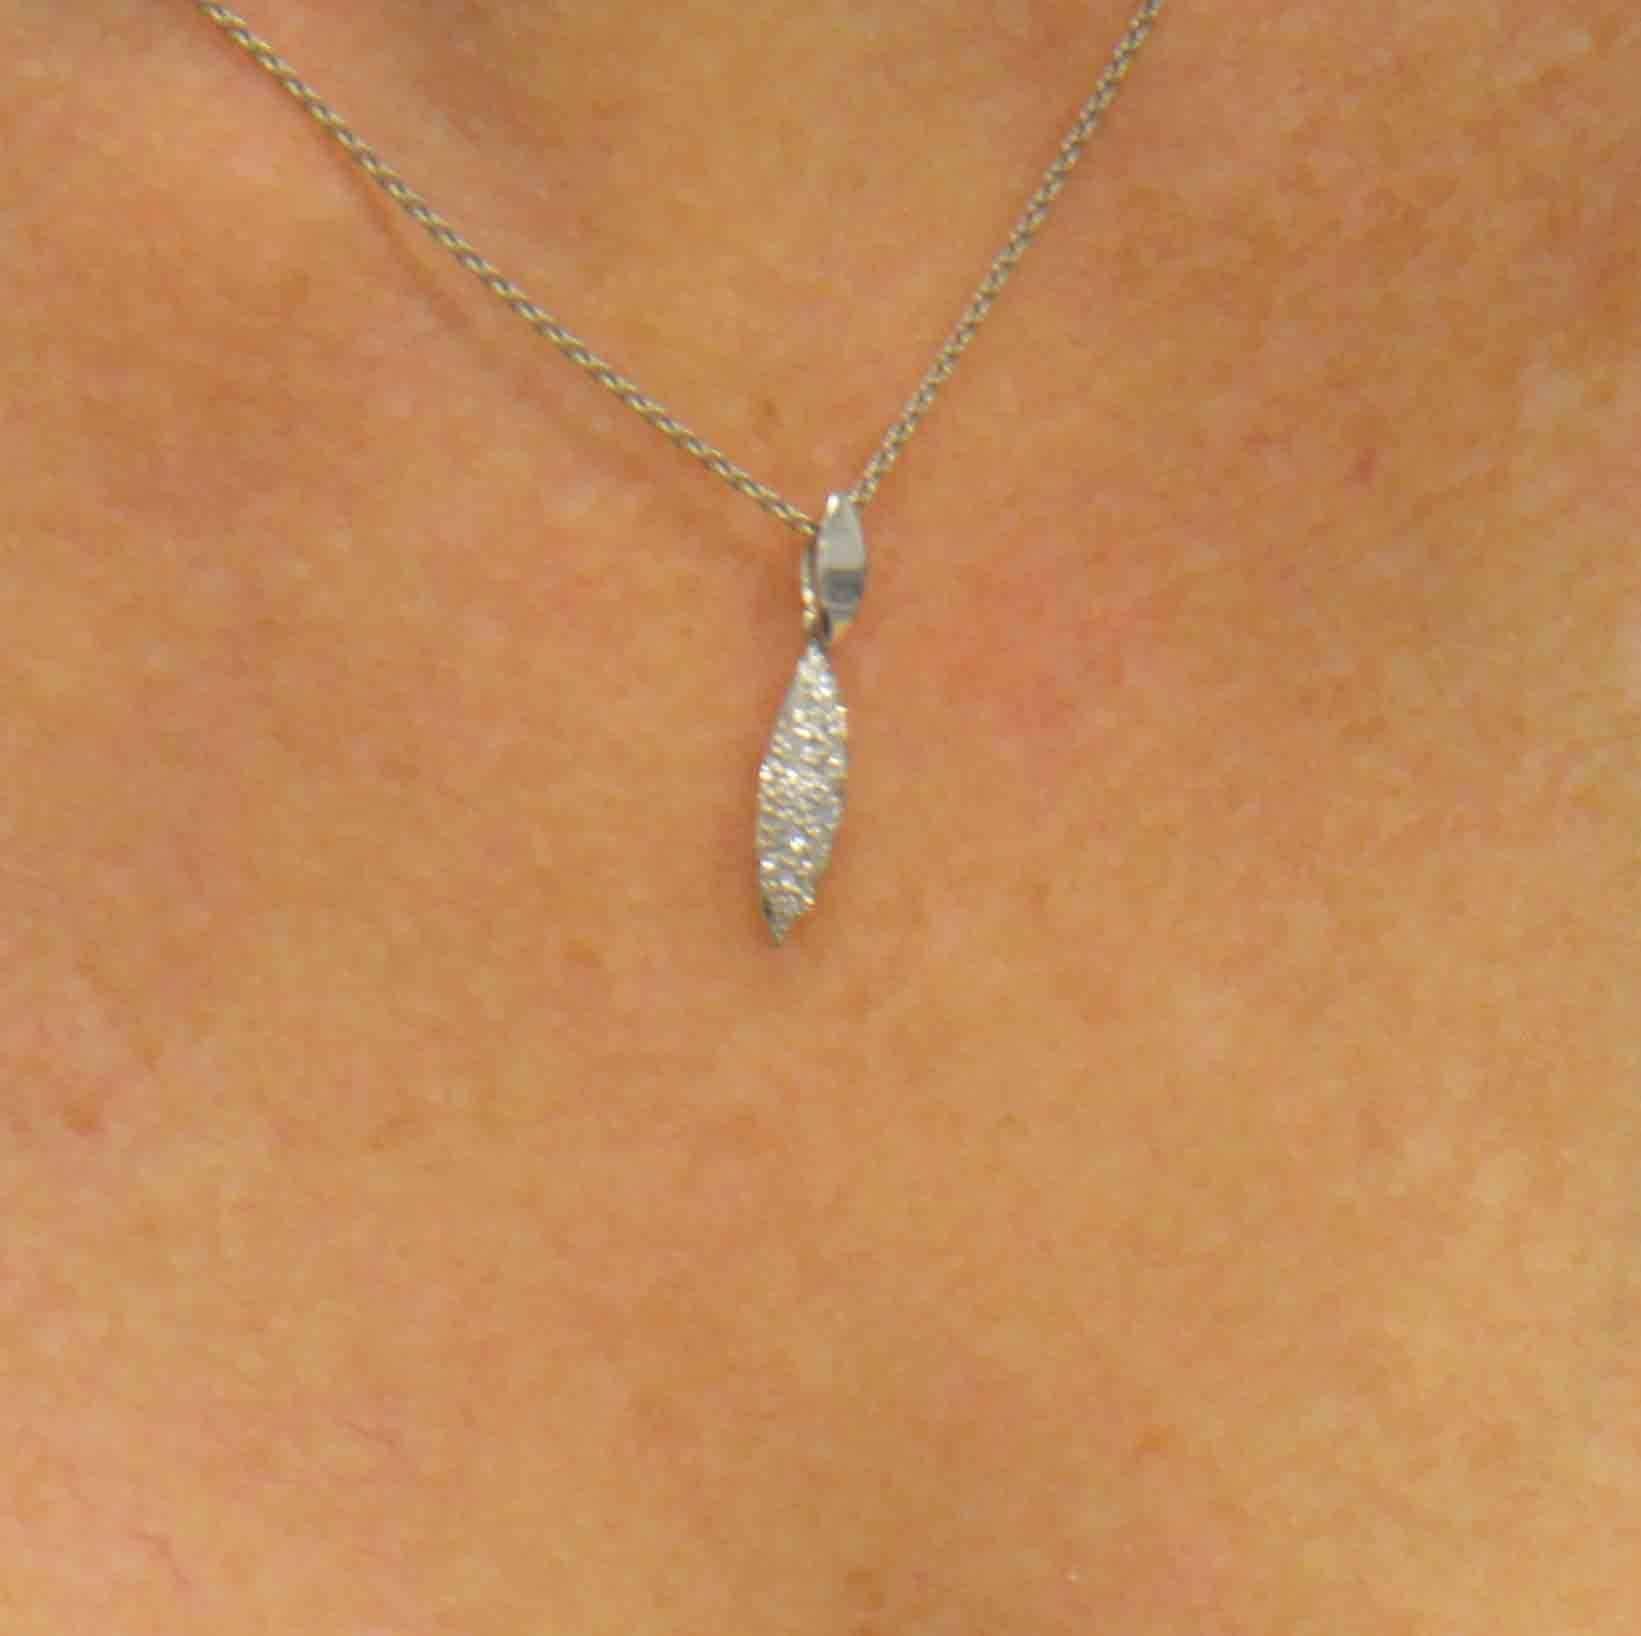 25 carat diamond necklace